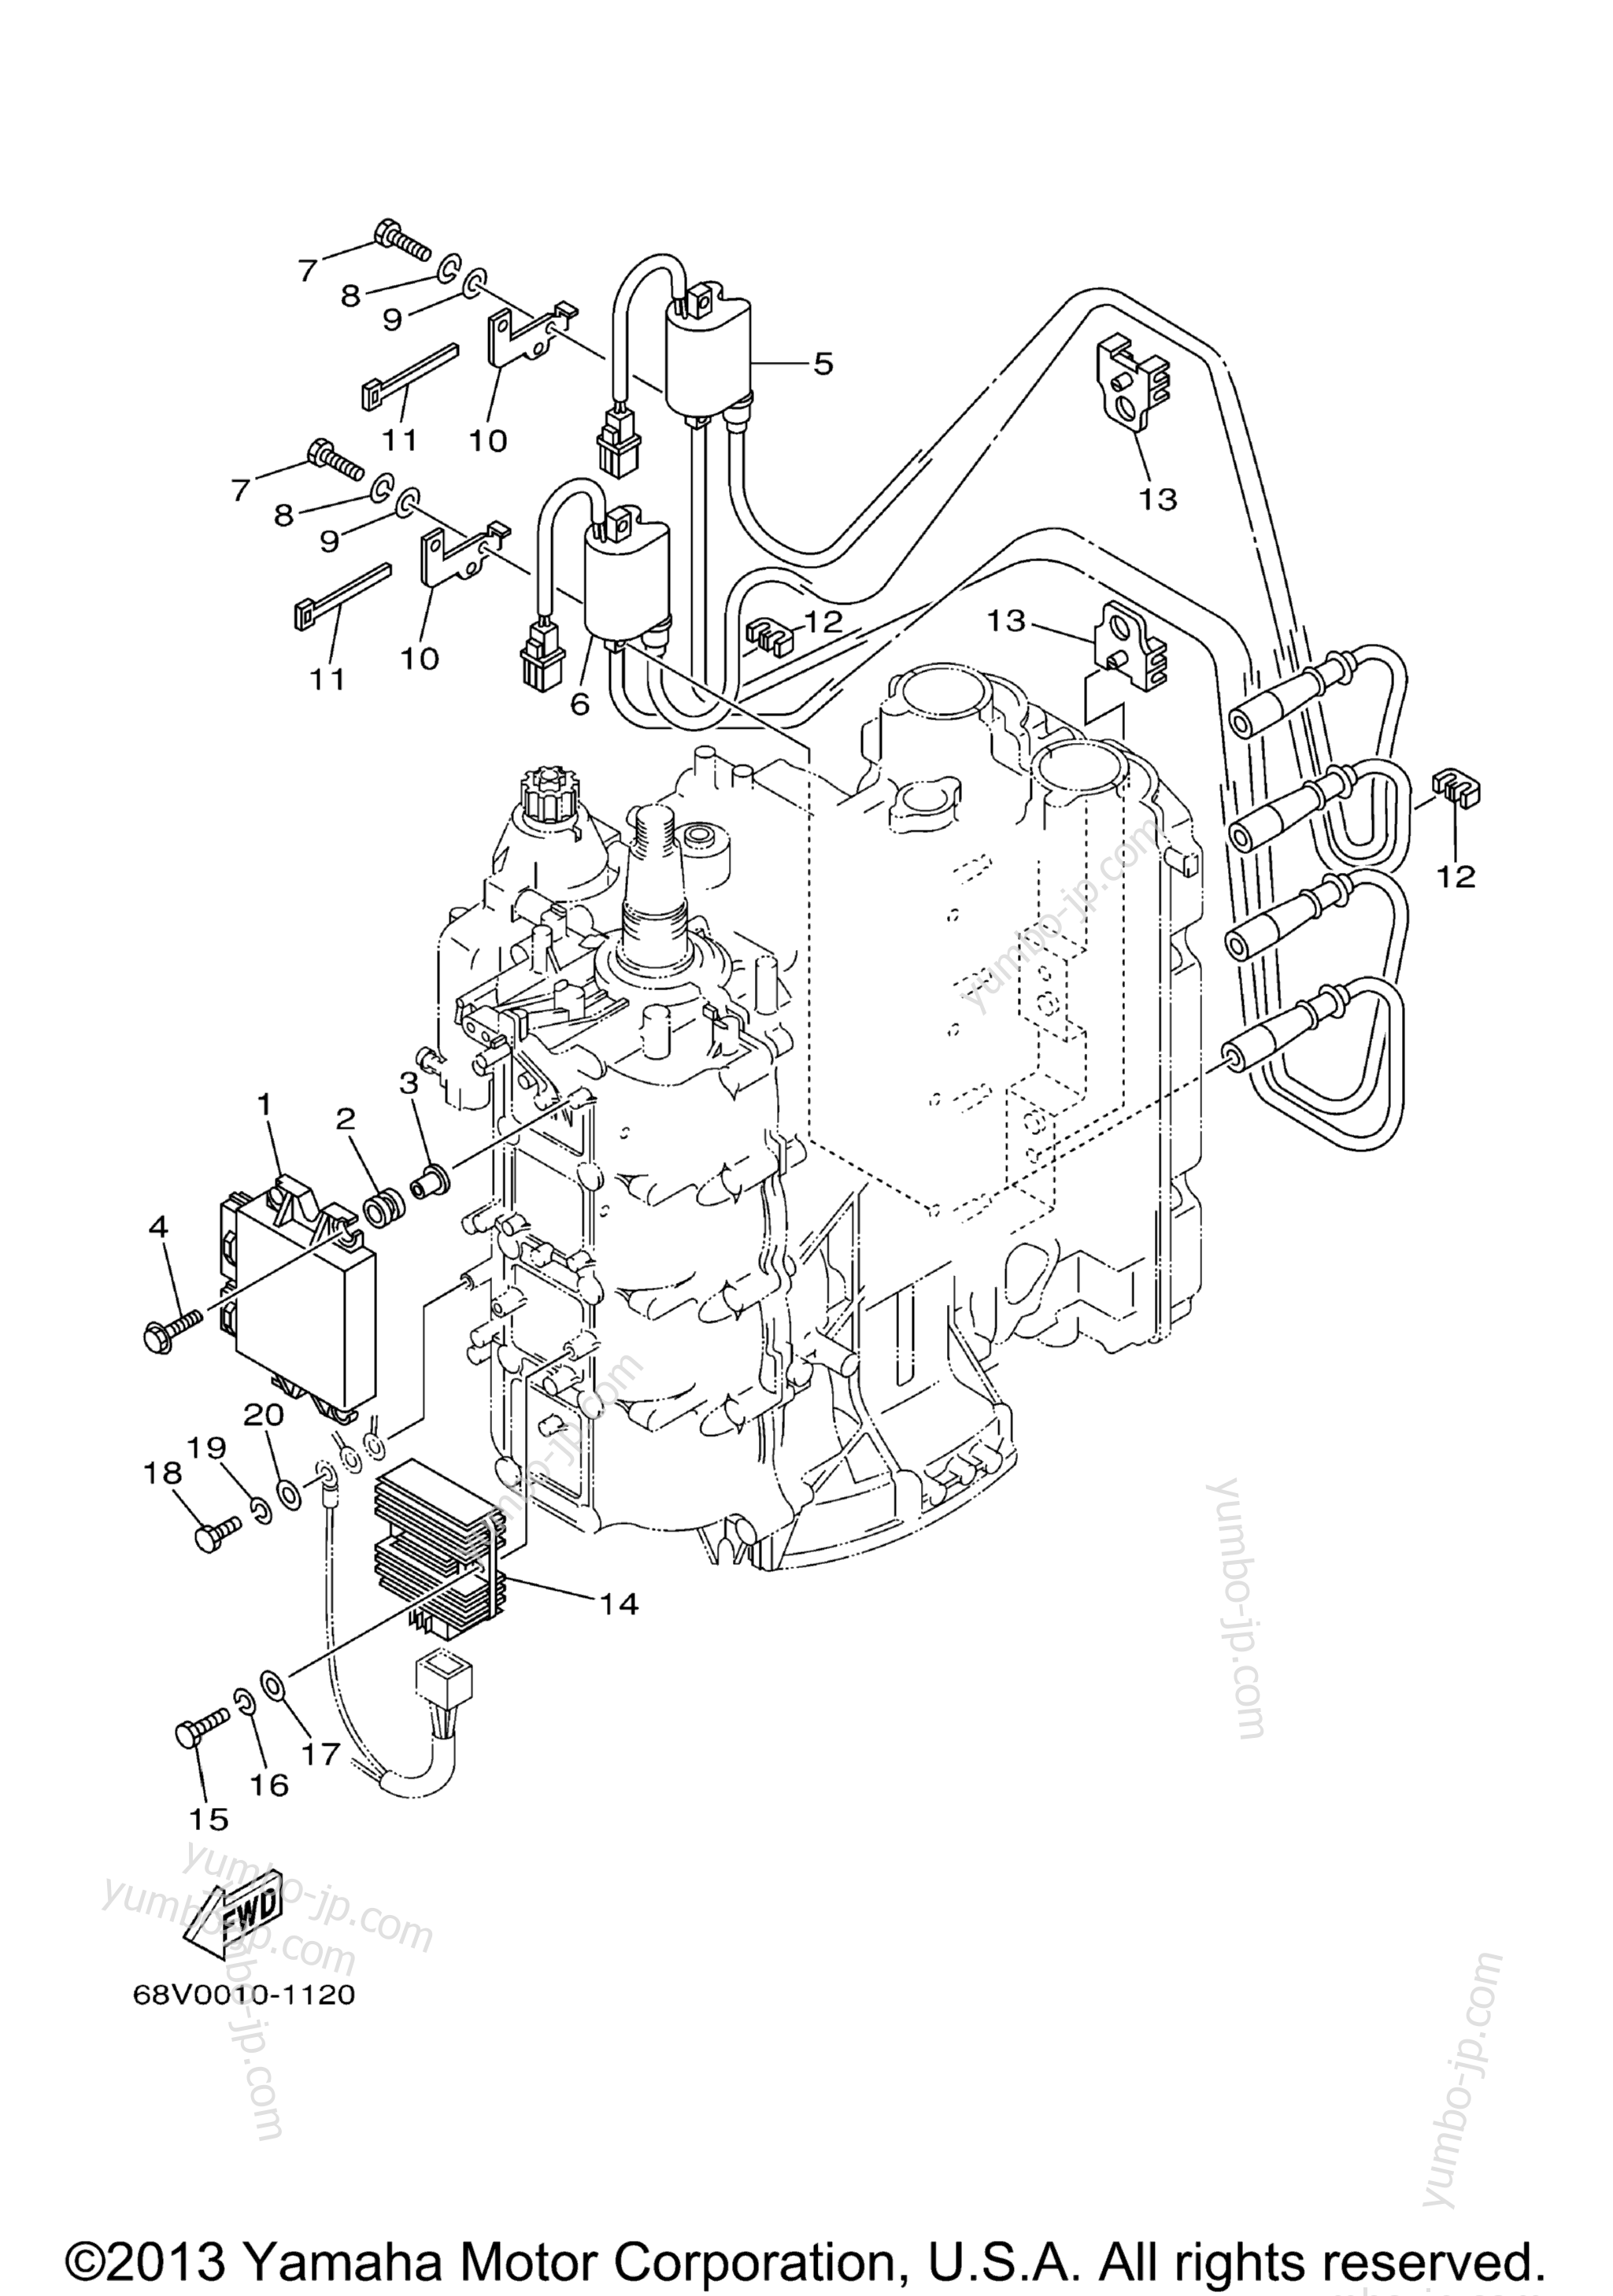 Electrical 1 для лодочных моторов YAMAHA TJRB_LF115TXRB (LF115TXRB) 2003 г.